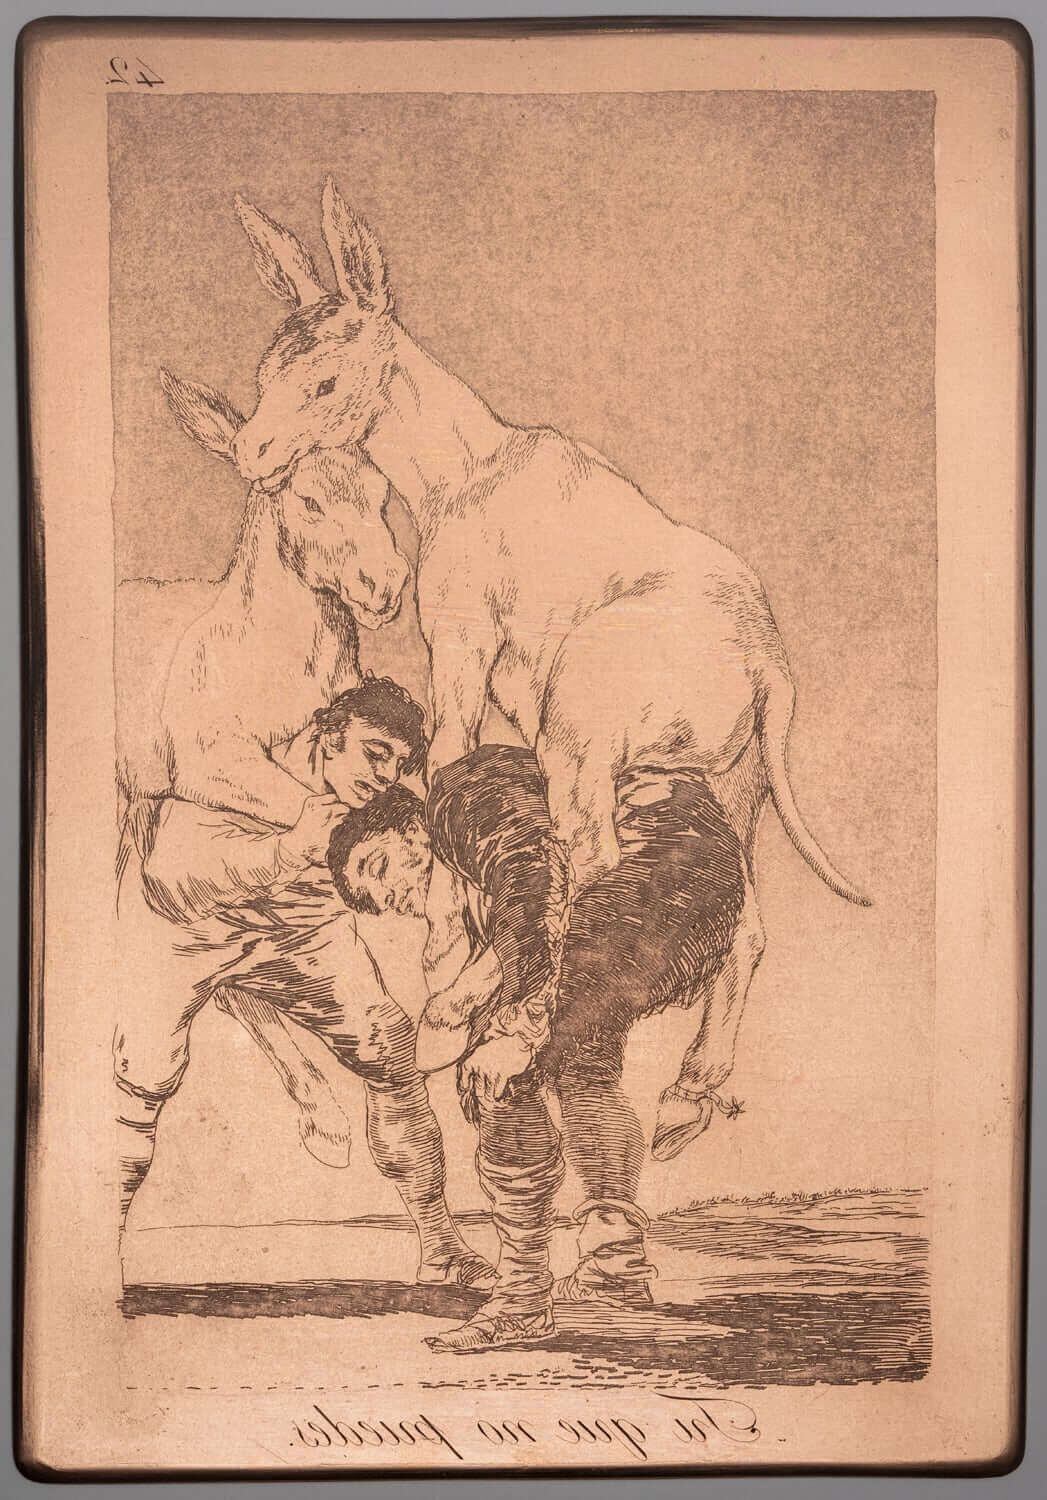 'Caprichos 42': 'Tú que no puedes', de Francisco de Goya (h. 1797). Lámina de cobre. Aguafuerte y aguatinta bruñida.